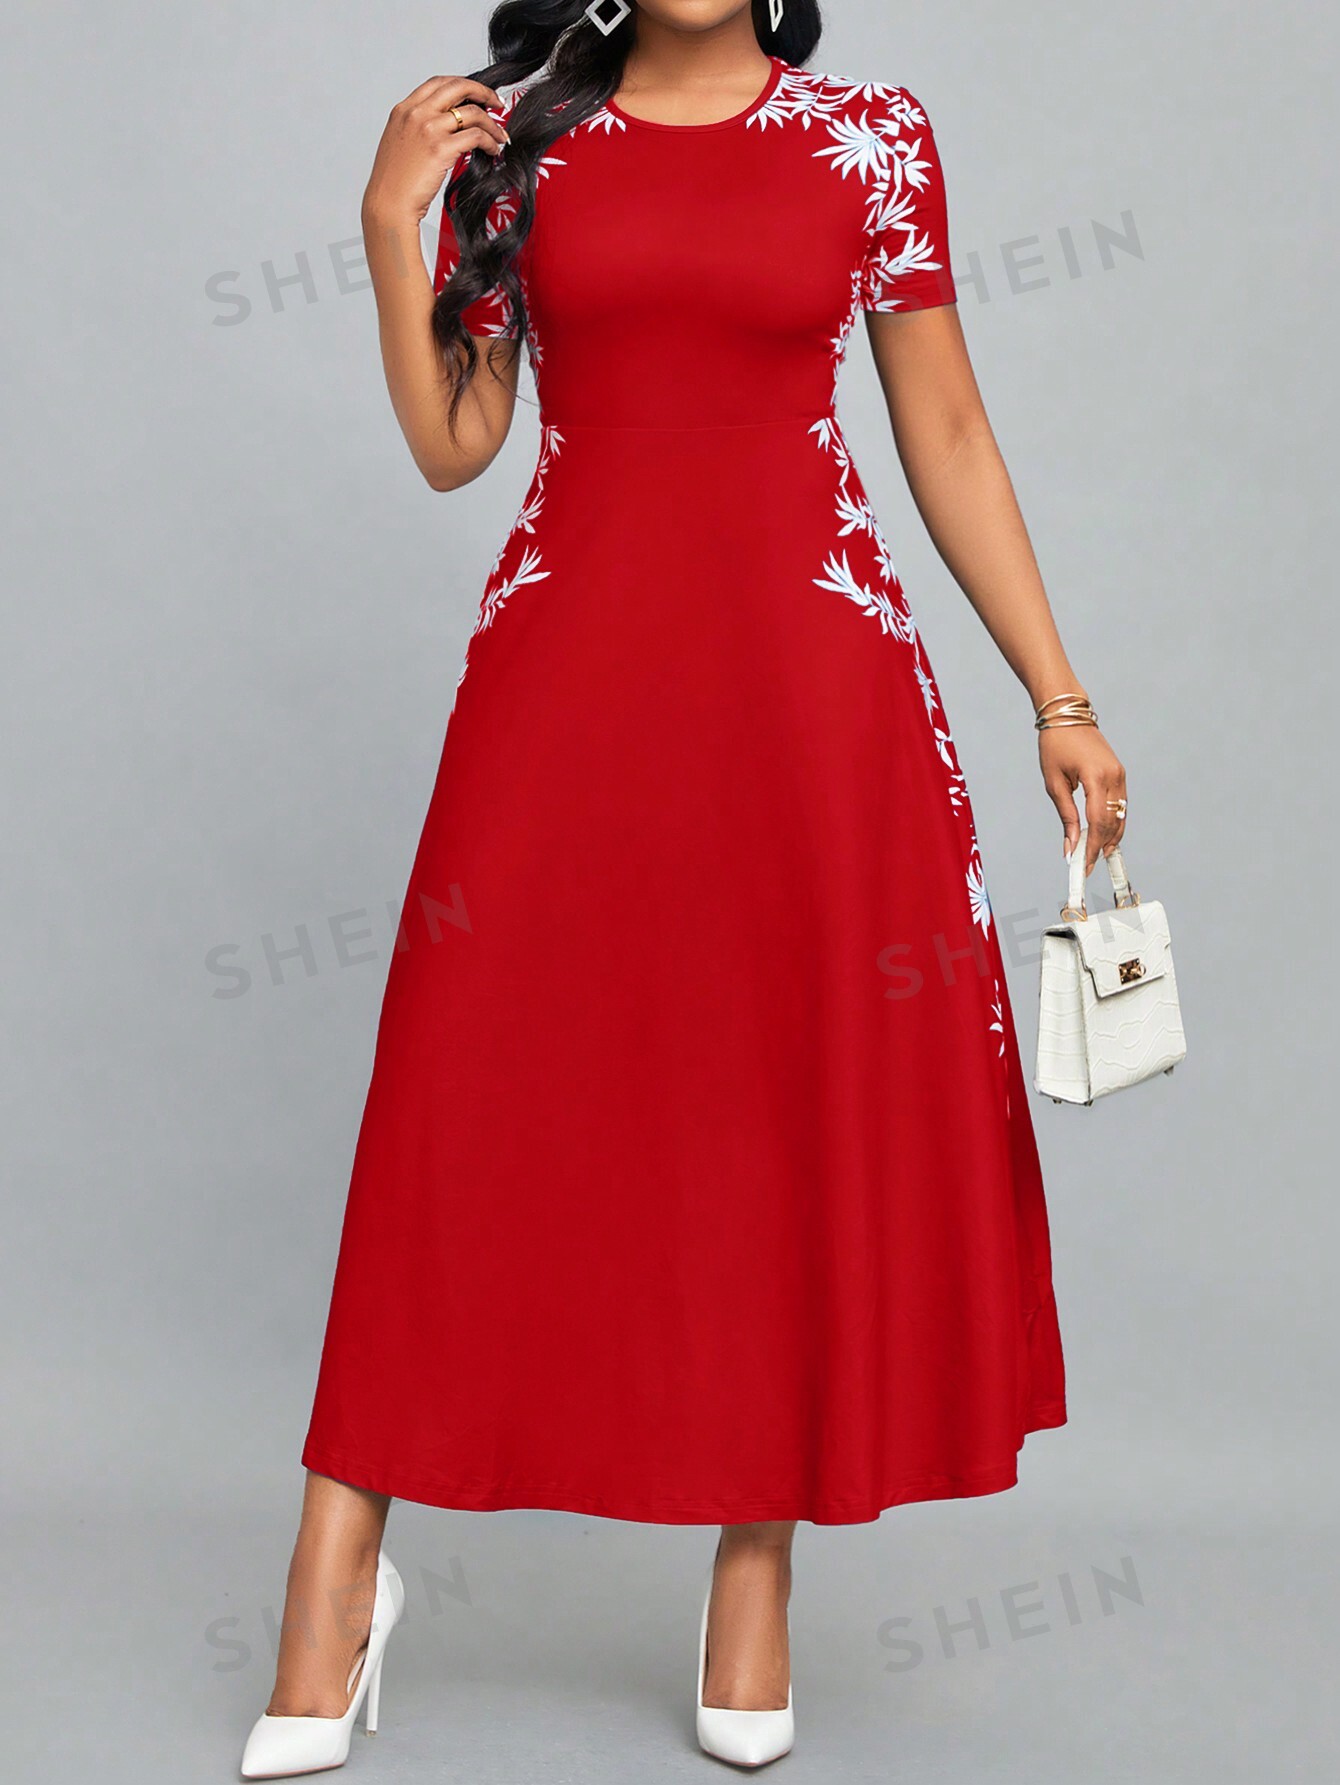 SHEIN Lady Женское платье с круглым вырезом и короткими рукавами с растительным принтом, красный и белый женское свободное платье рубашка средней длины элегантное платье большого размера с геометрическим принтом круглым вырезом и рукавами в